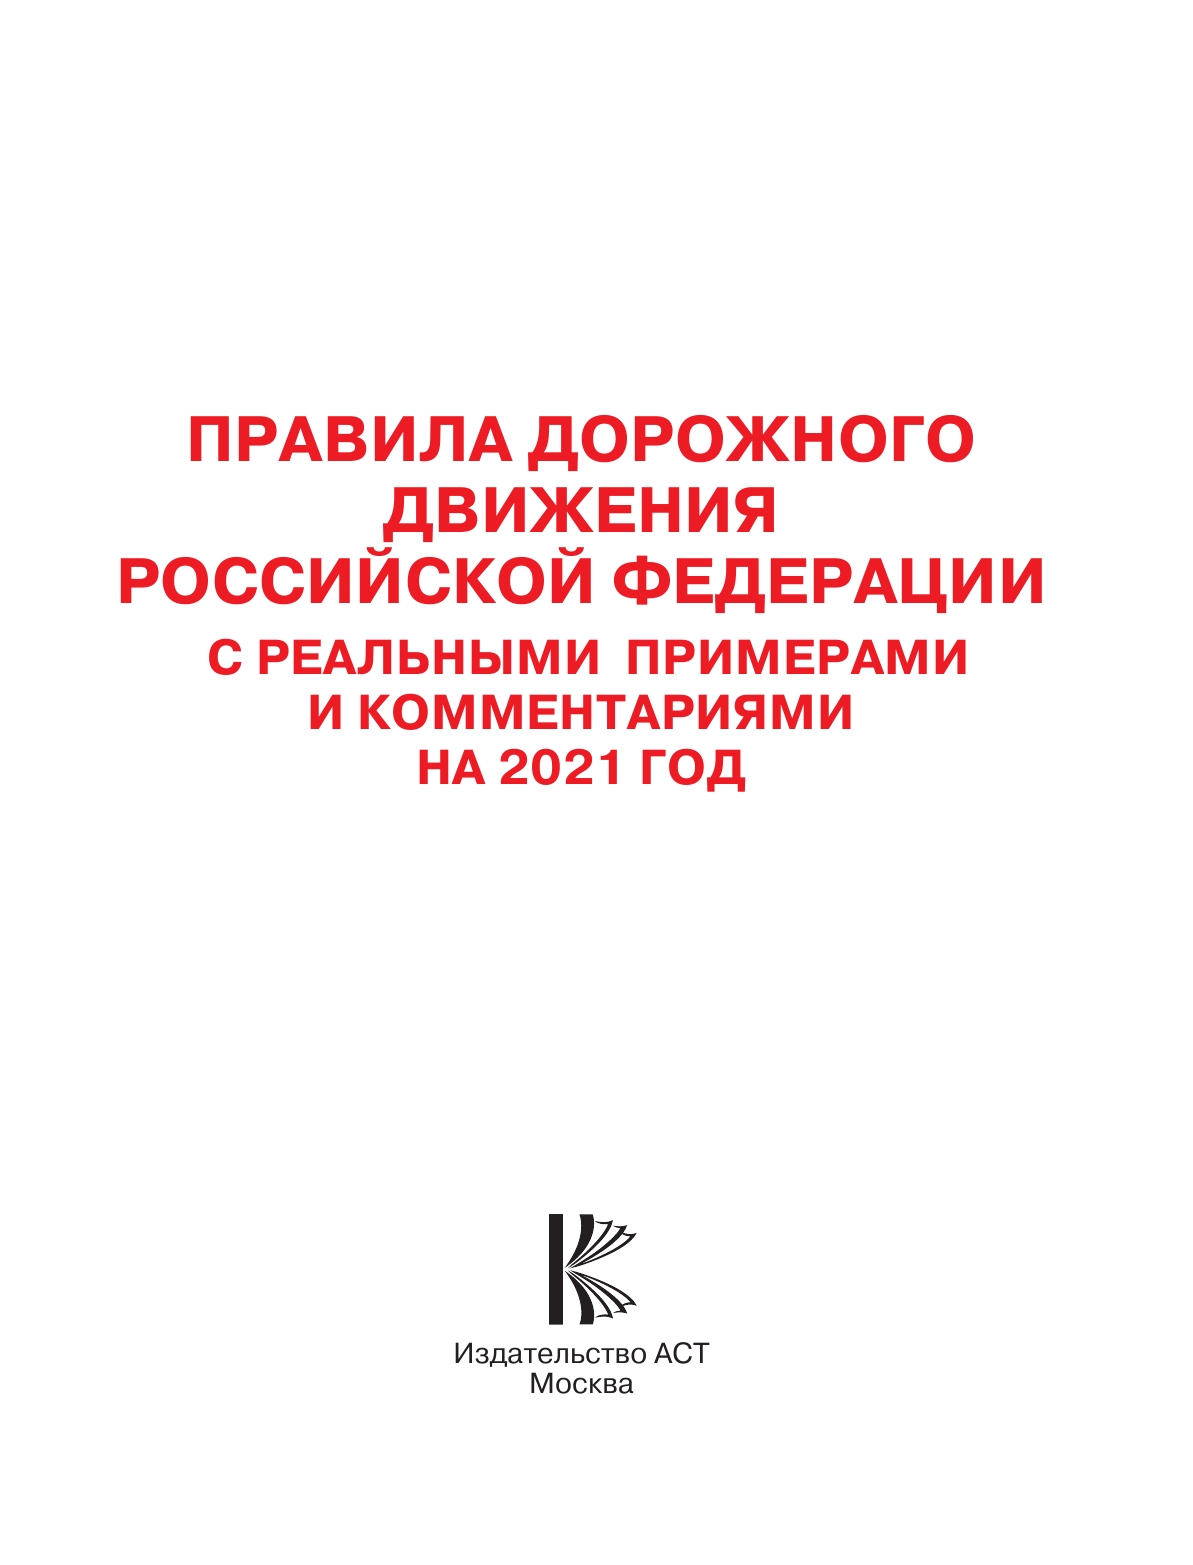  Правила дорожного движения Российской Федерации с реальными примерами и комментариями на 2021 год - страница 2